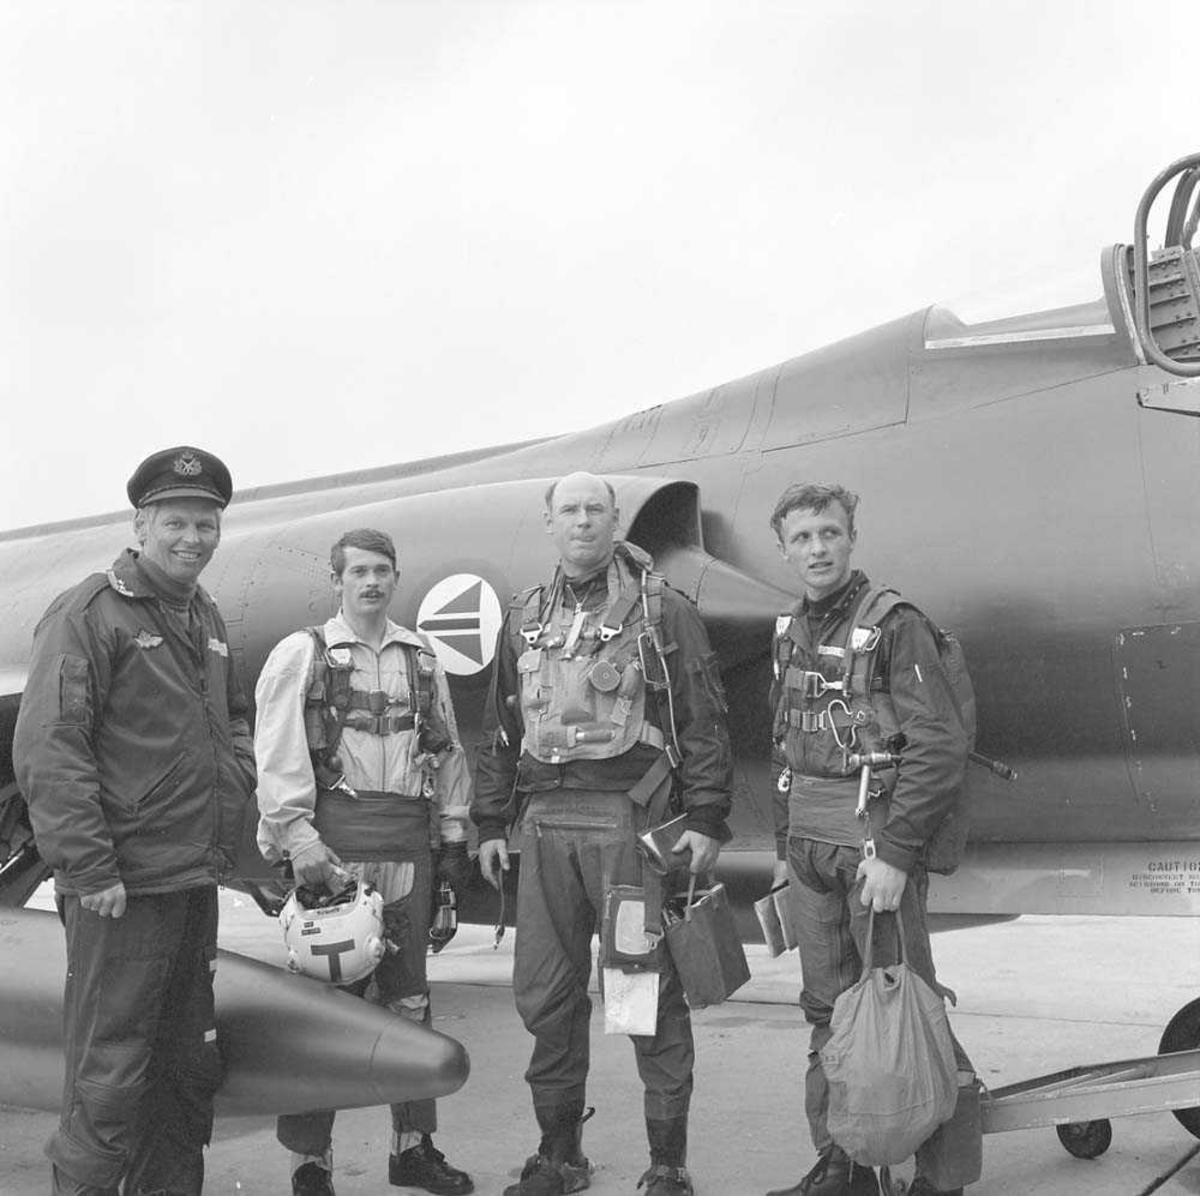 Første CF-104 Starfighter til 334 skvadron, Bodø flystasjon. Oberstløytnant Alf Granviken sees til venstre og Kaptein I. E. Aase sees til høyre på bildet.